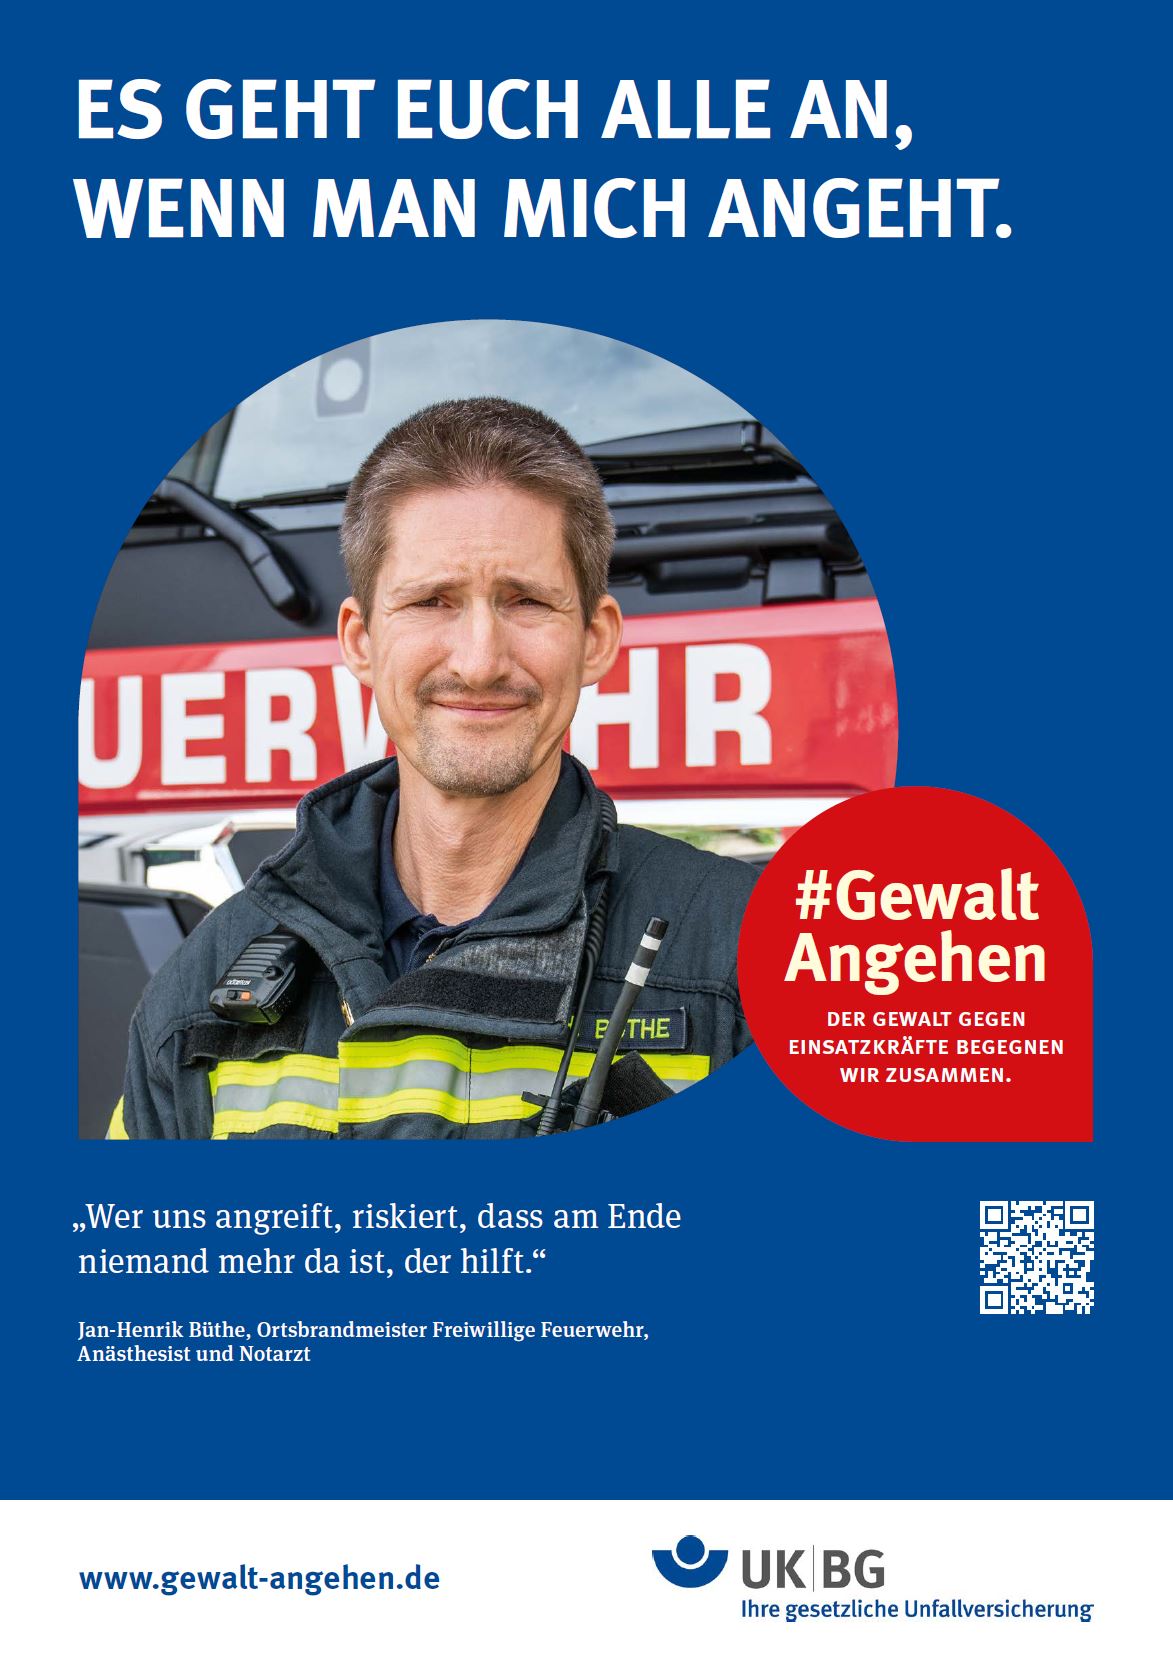 Jan-Henrik Bürhe, Freiwillige Feuerwehr "Wer uns angreift, riskiert, dass am Ende niemand mehr da ist, der hilft"